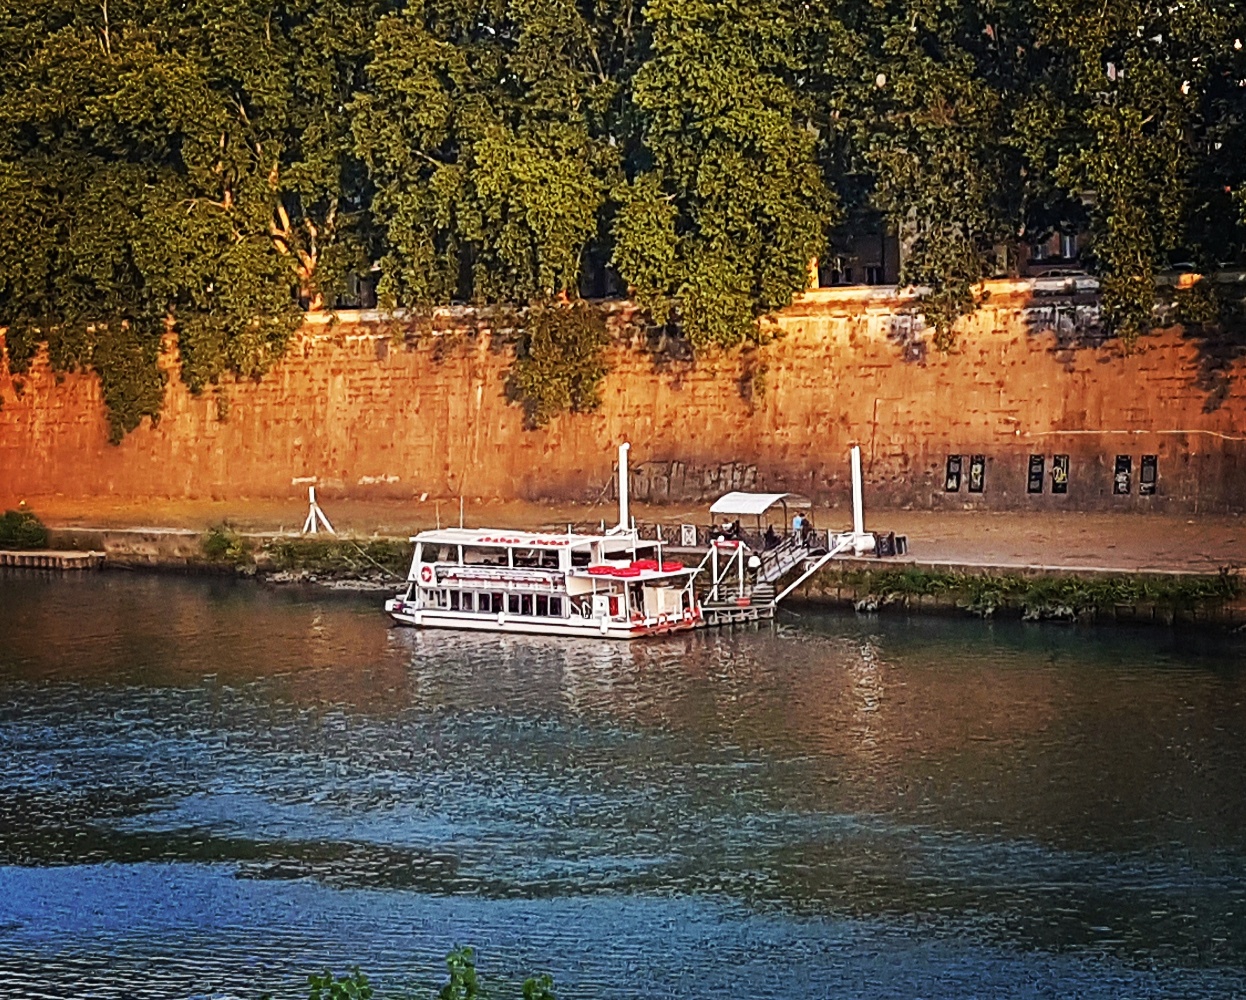 Passeio de barco pelo Rio Tevere em Roma - Blog Vou pra Roma